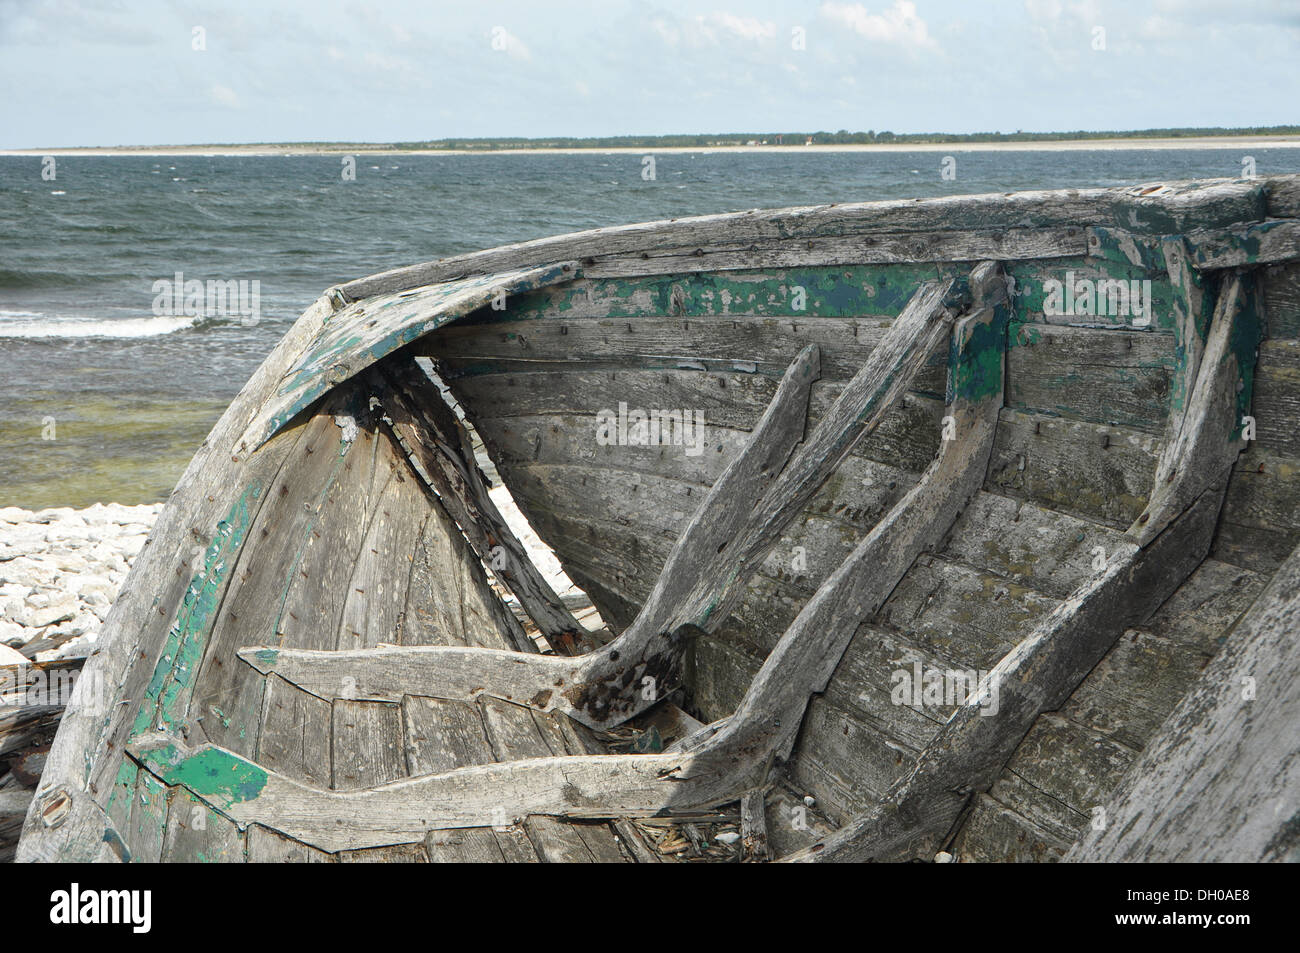 C'est un vieux bateau épave gisant sur fårö Gotland en Suède. Banque D'Images